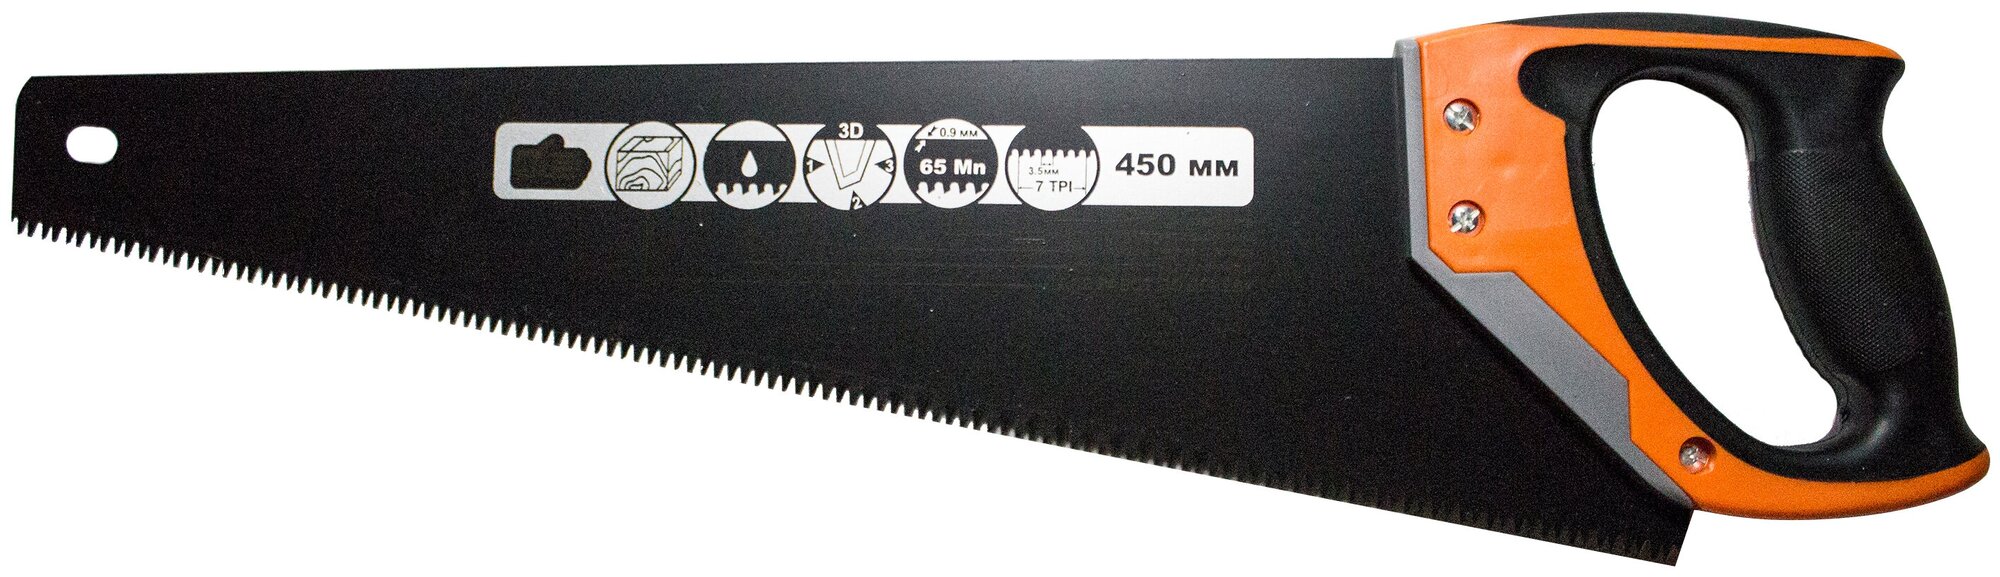 Ножовка по дереву поперечный профиль зуб 3.5мм 3D заточка 450мм 